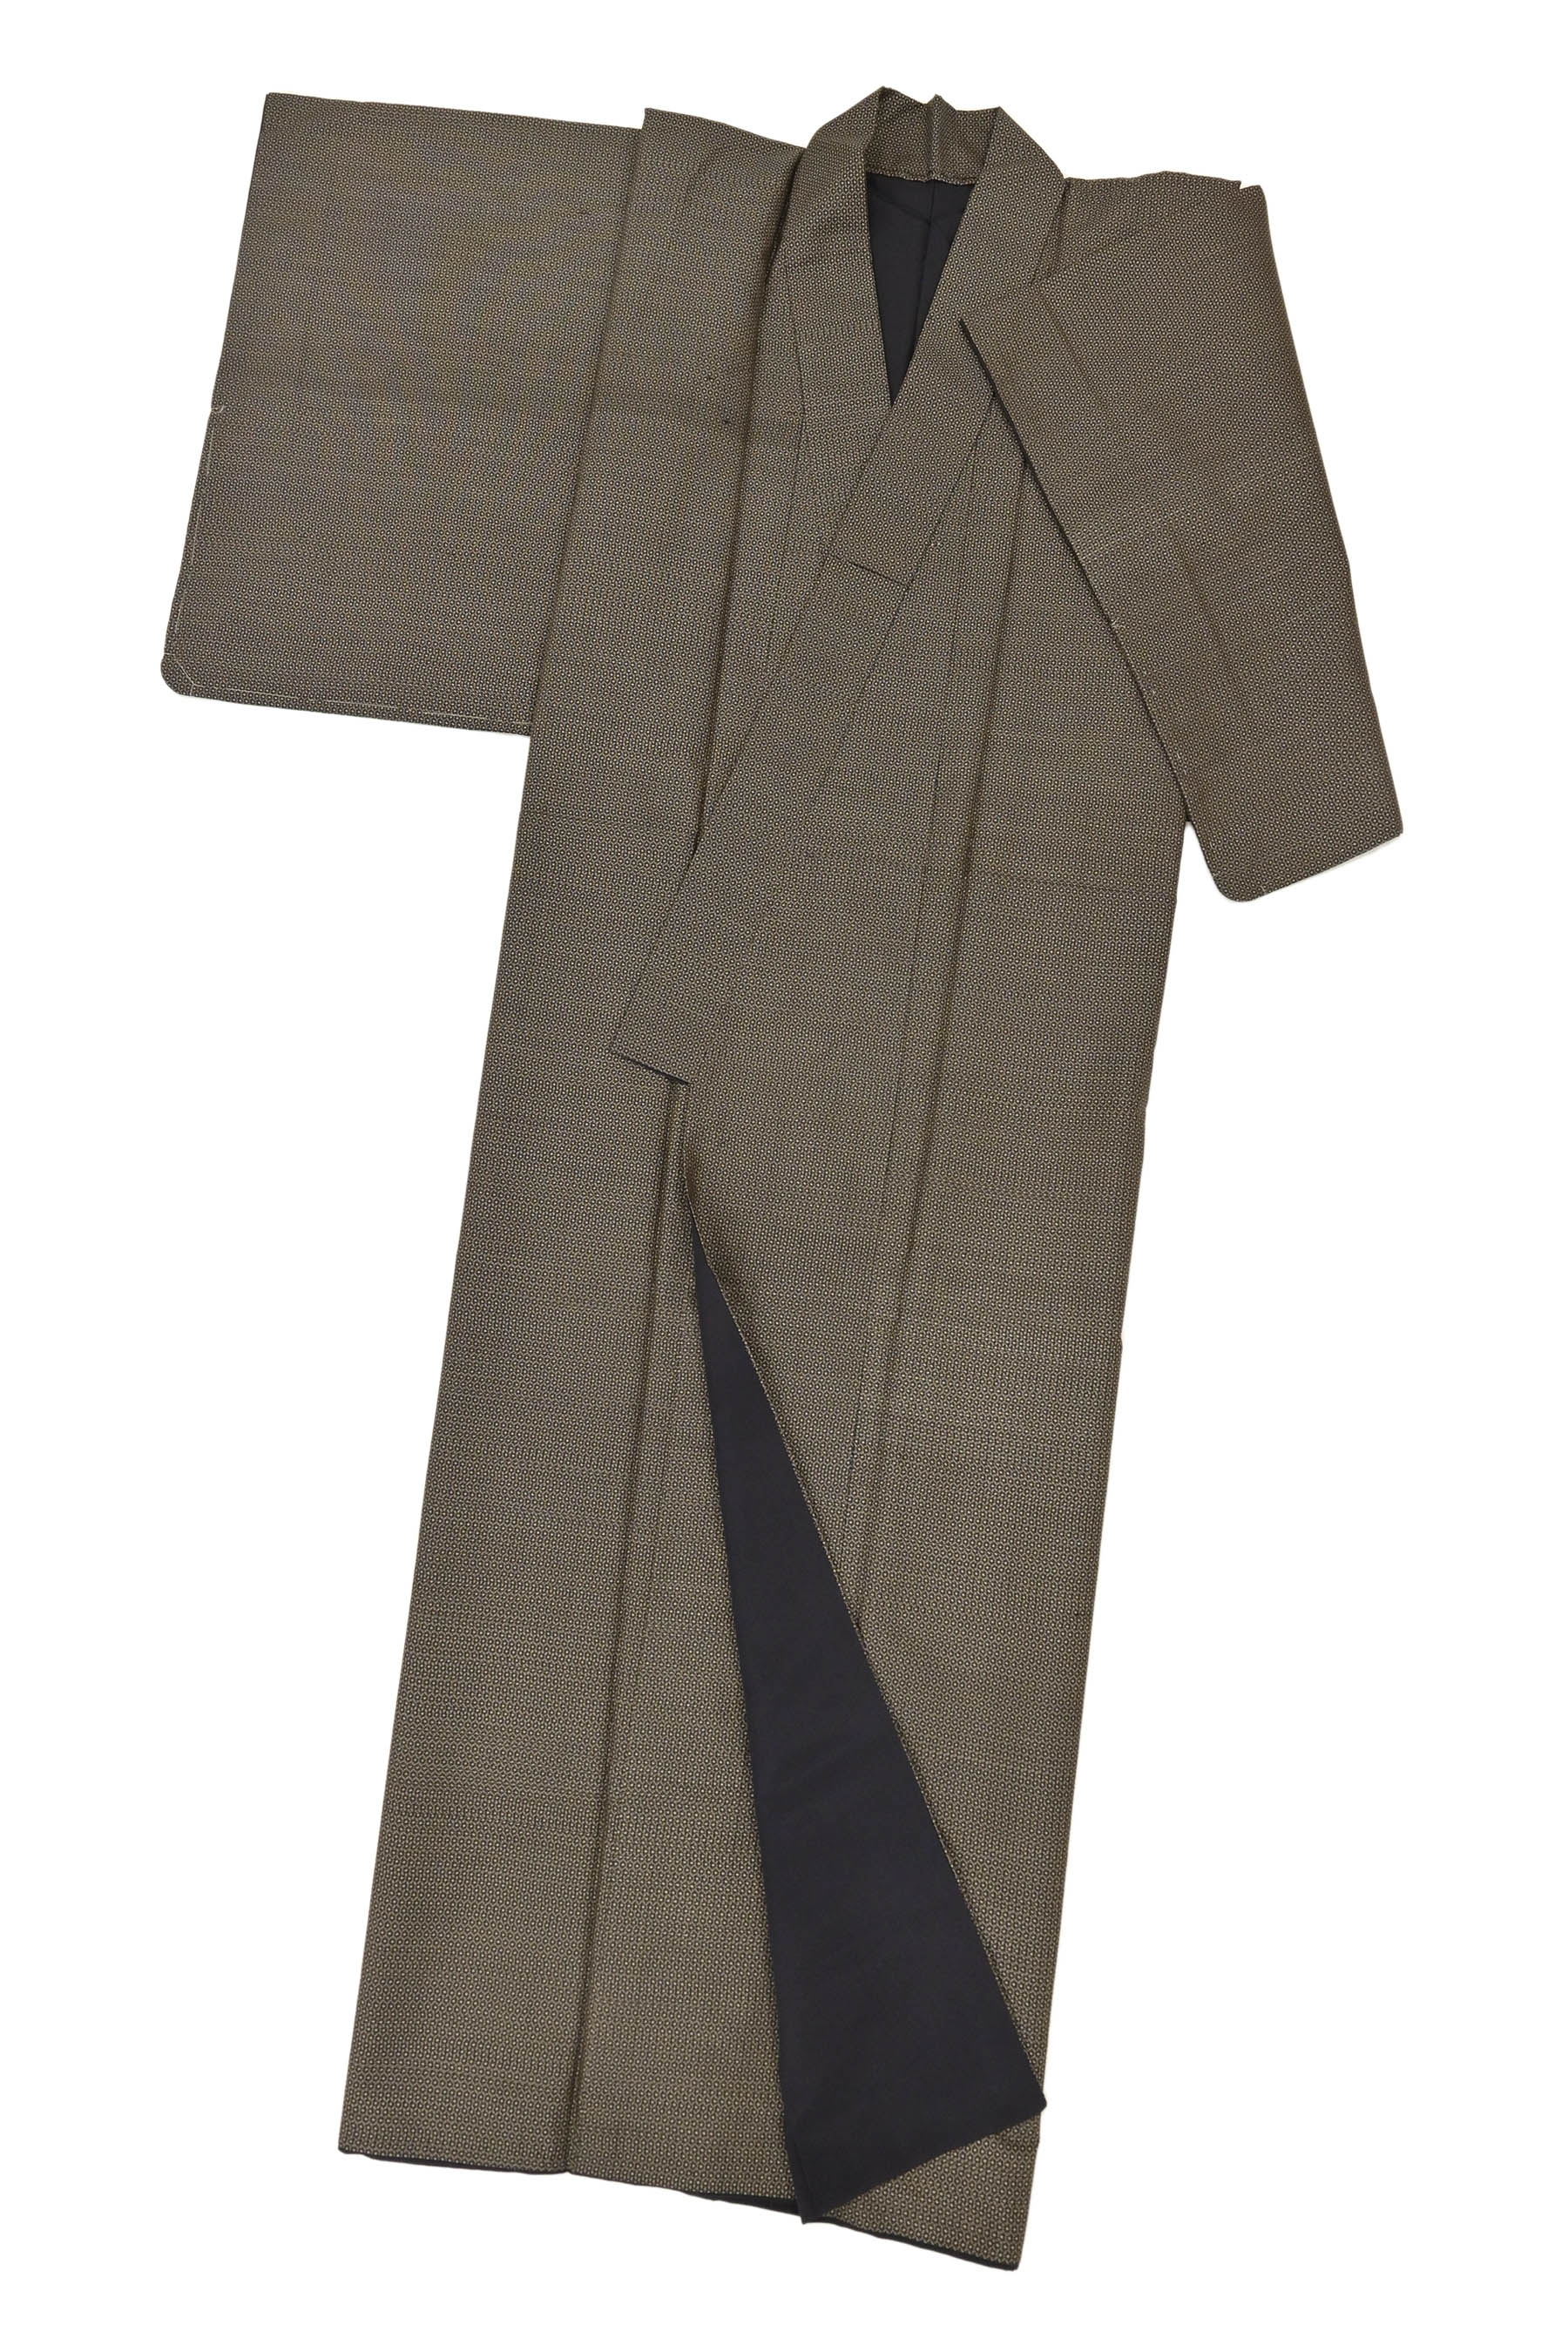 宗sou 大島紬 アンサンブル 亀甲絣文 着物 - 女性和服、着物